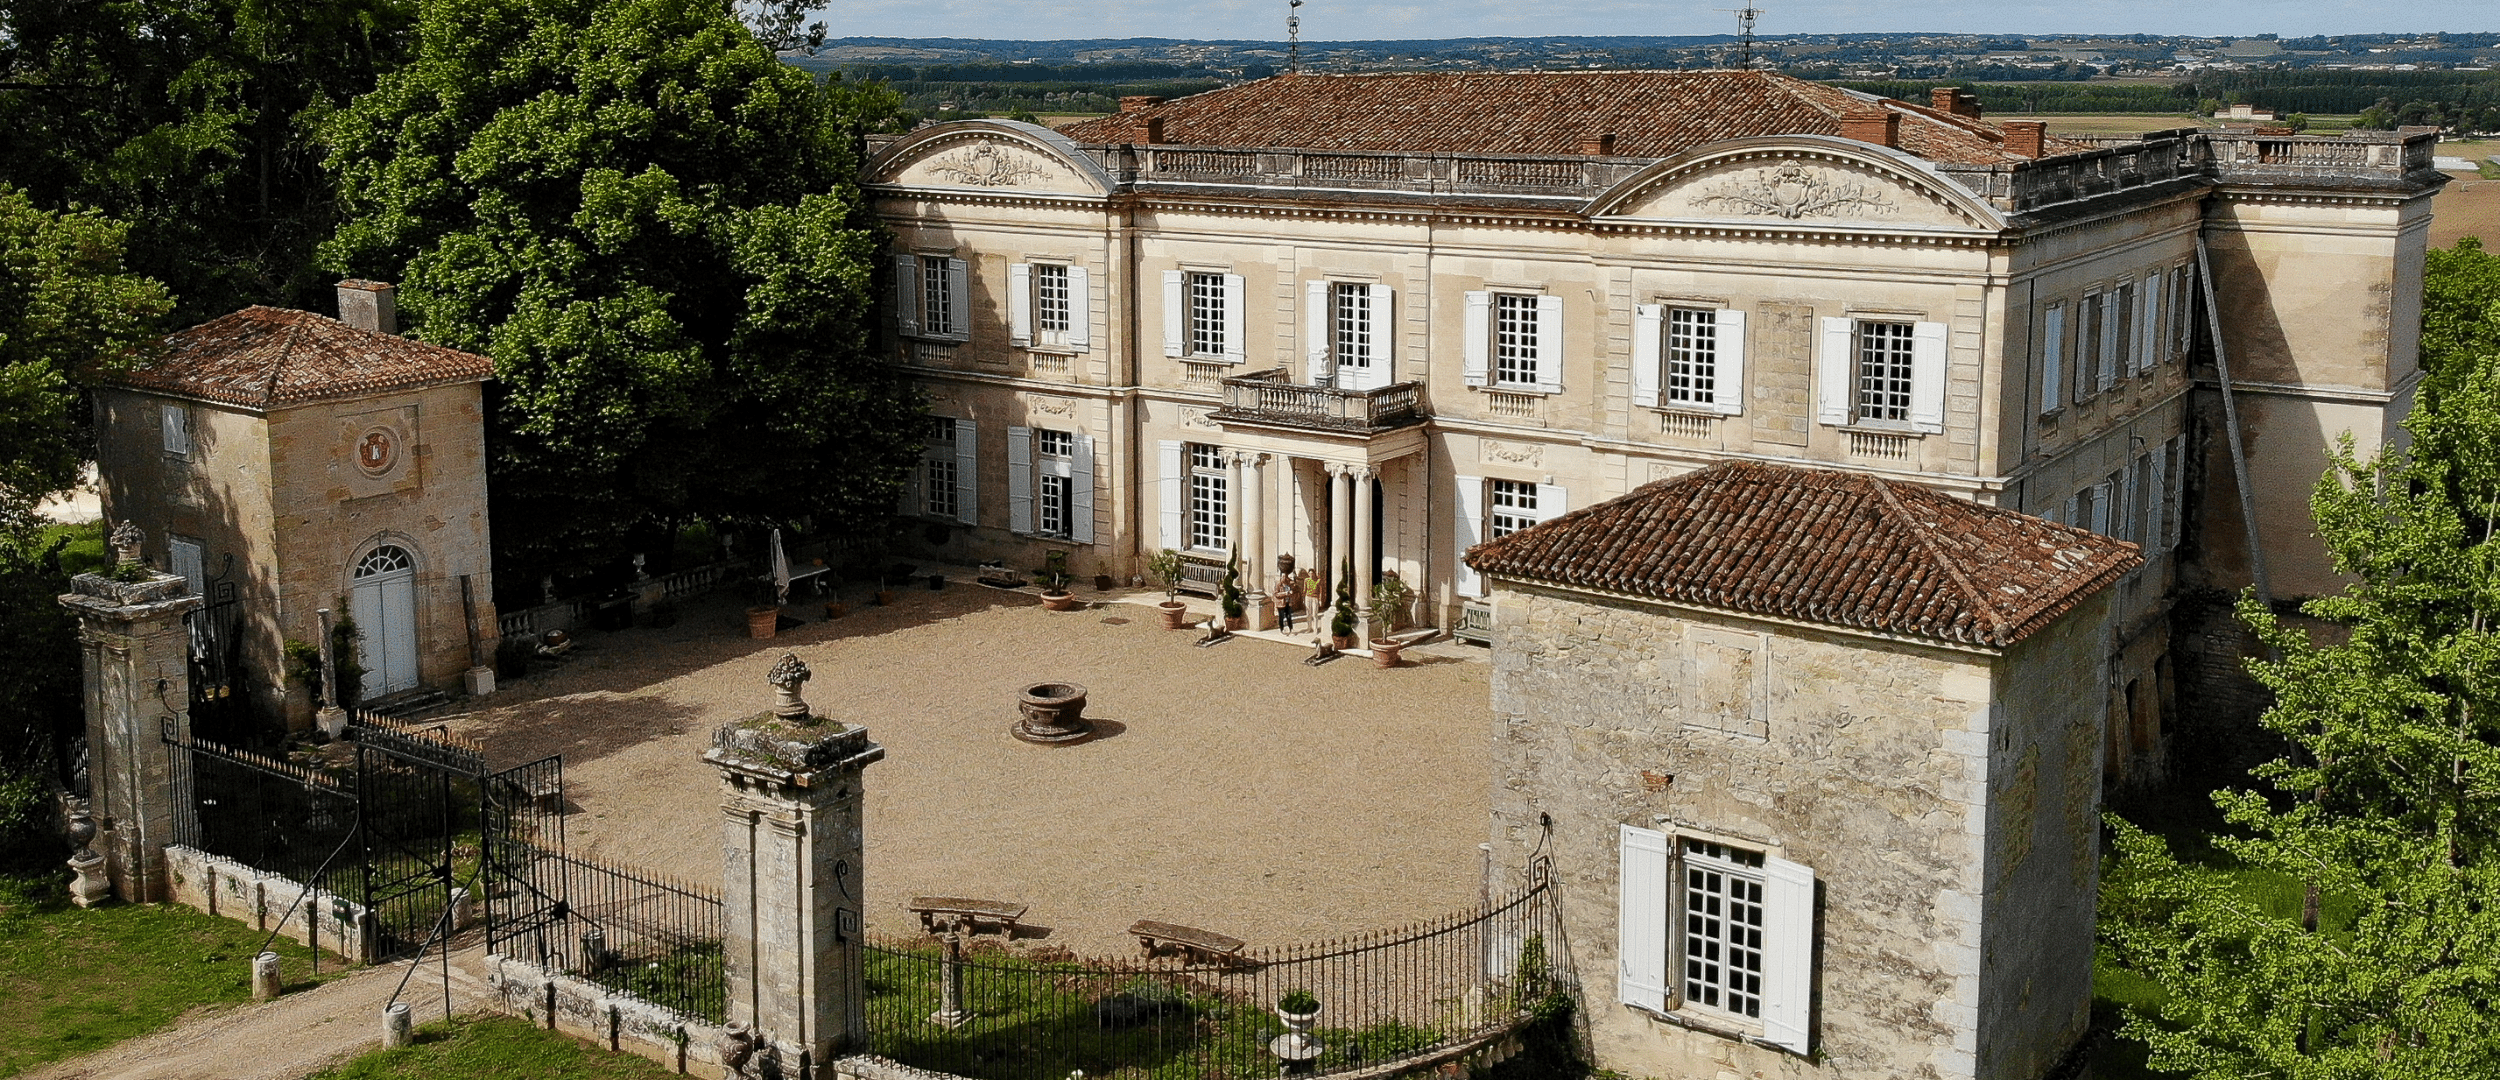 Exclusive Tour of Château de Marcellus, by Samuel Roger, owner